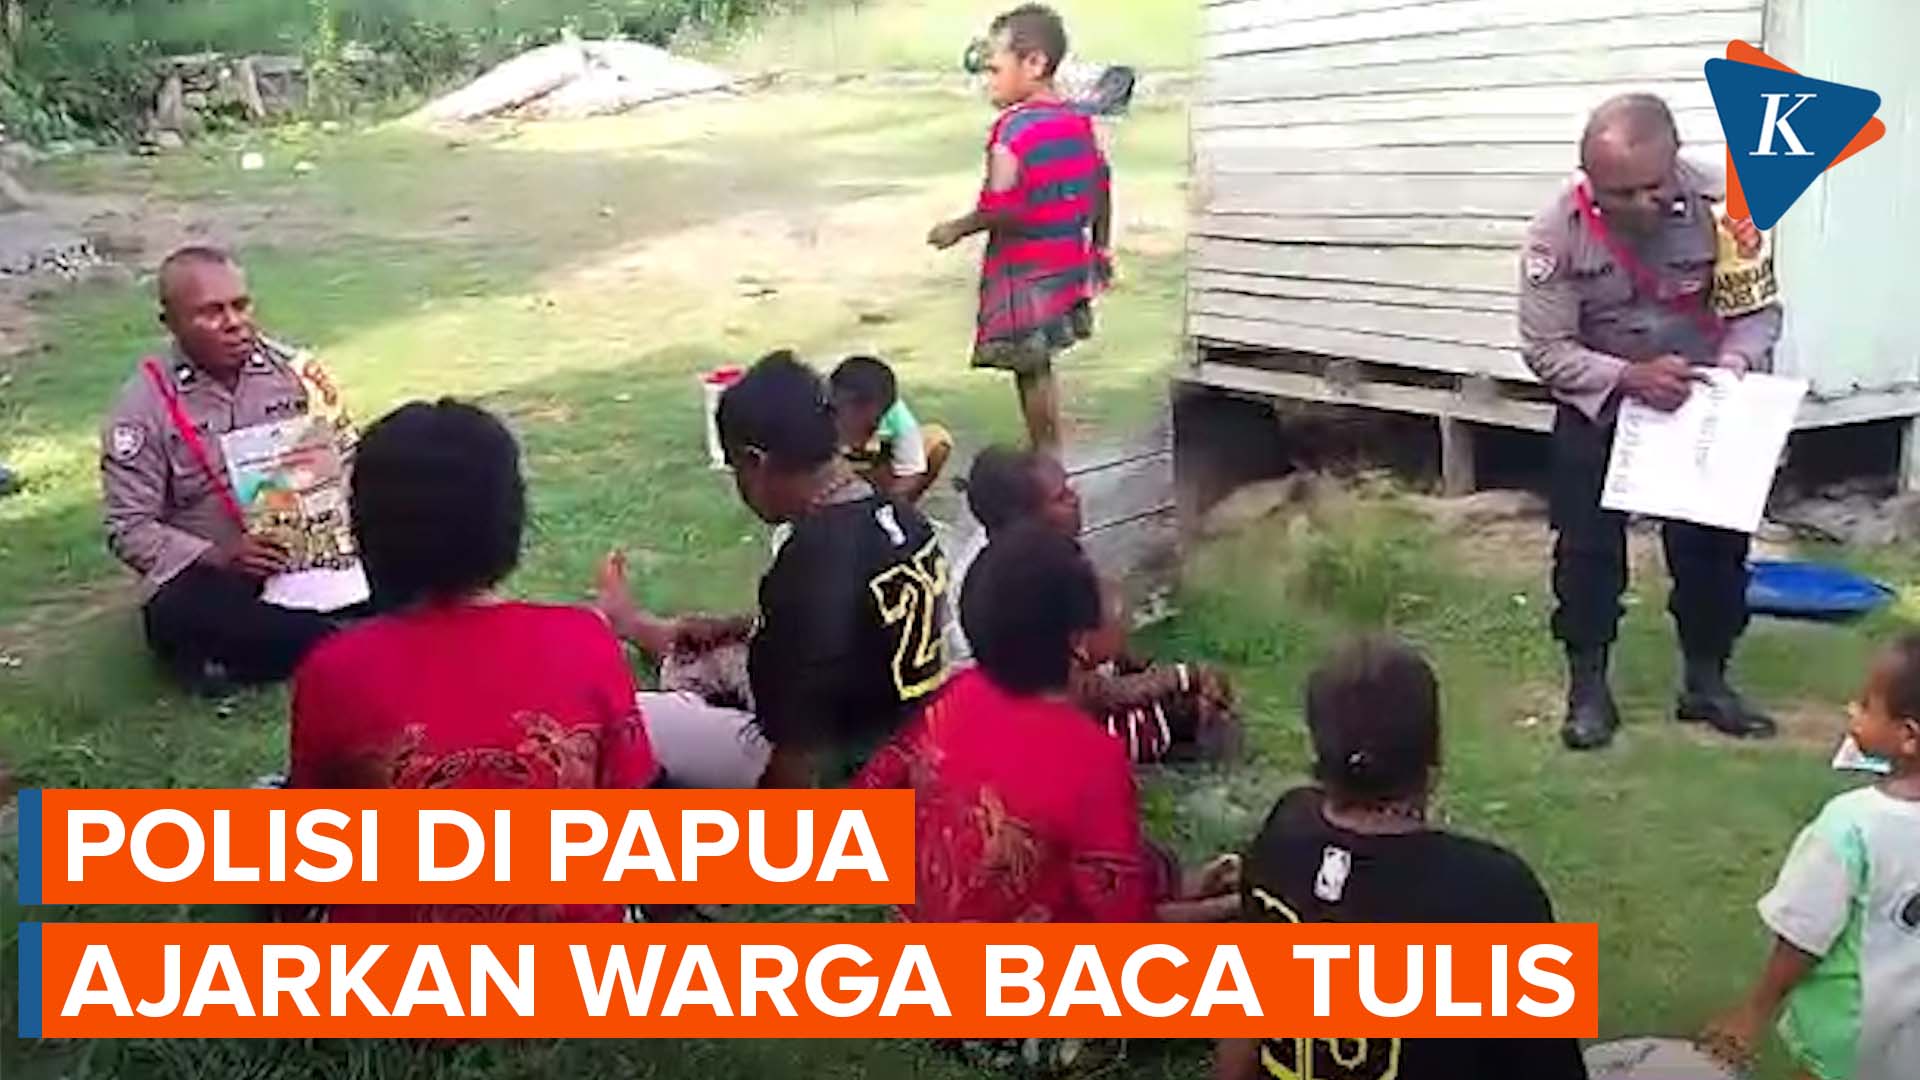 Kisah Aipda Frederik Bay, Luangkan Waktu Mengajar Baca Tulis pada Ibu-ibu dan Anak-anak di Papua